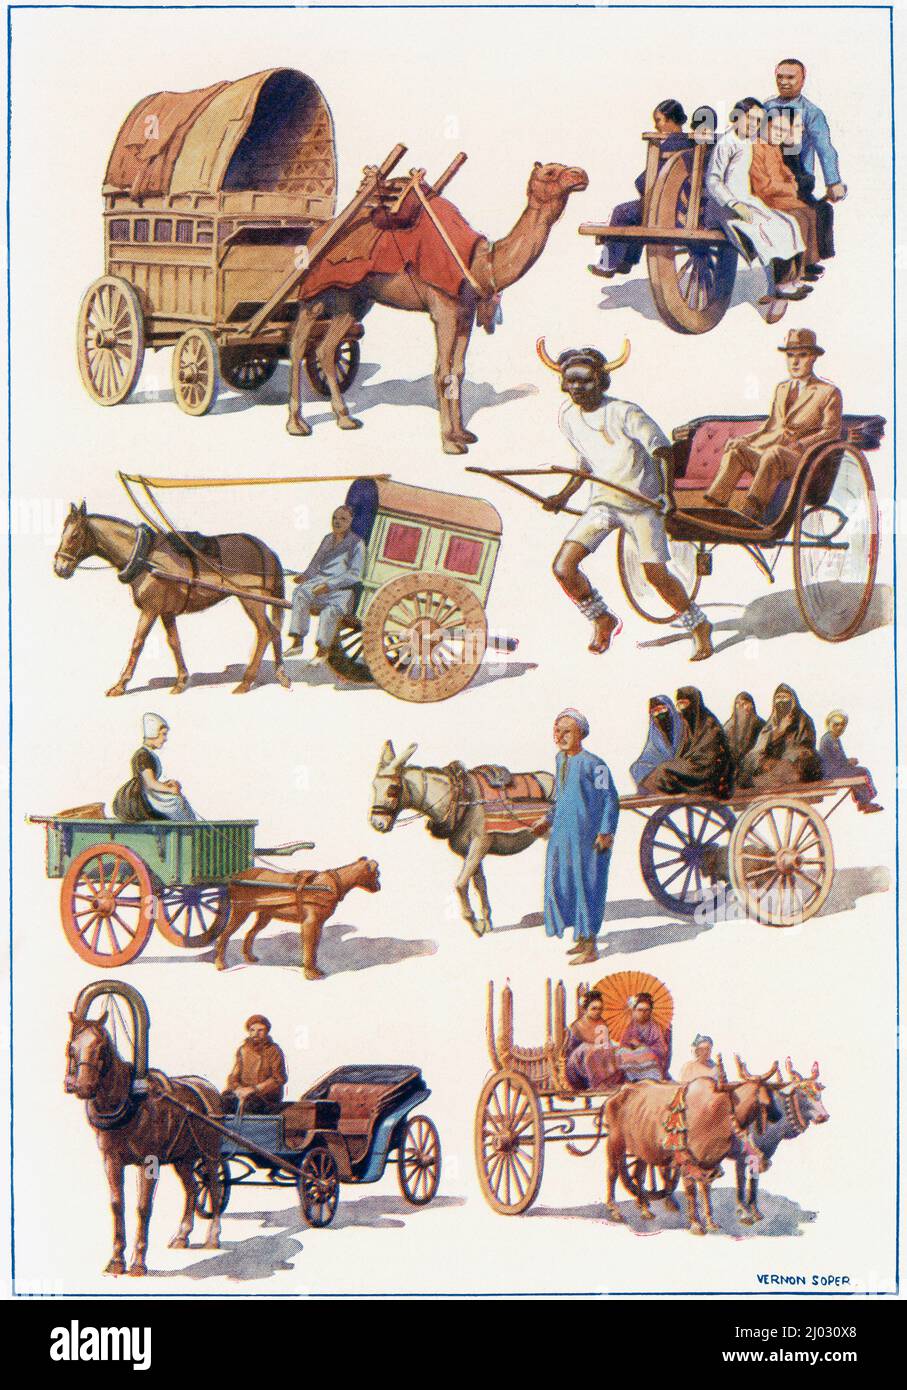 Fahrzeuge der Welt - von links oben nach rechts - indischer Kamelwagen, chinesischer Einrad-Schubkarre, chinesischer Kippkarren, südafrikanische Rikscha, niederländischer Hundewagen, Ägyptischer Wagen, russischer Droschky, birmanischer Wagen. Aus dem Wunderland des Wissens, erschienen um 1930 Stockfoto